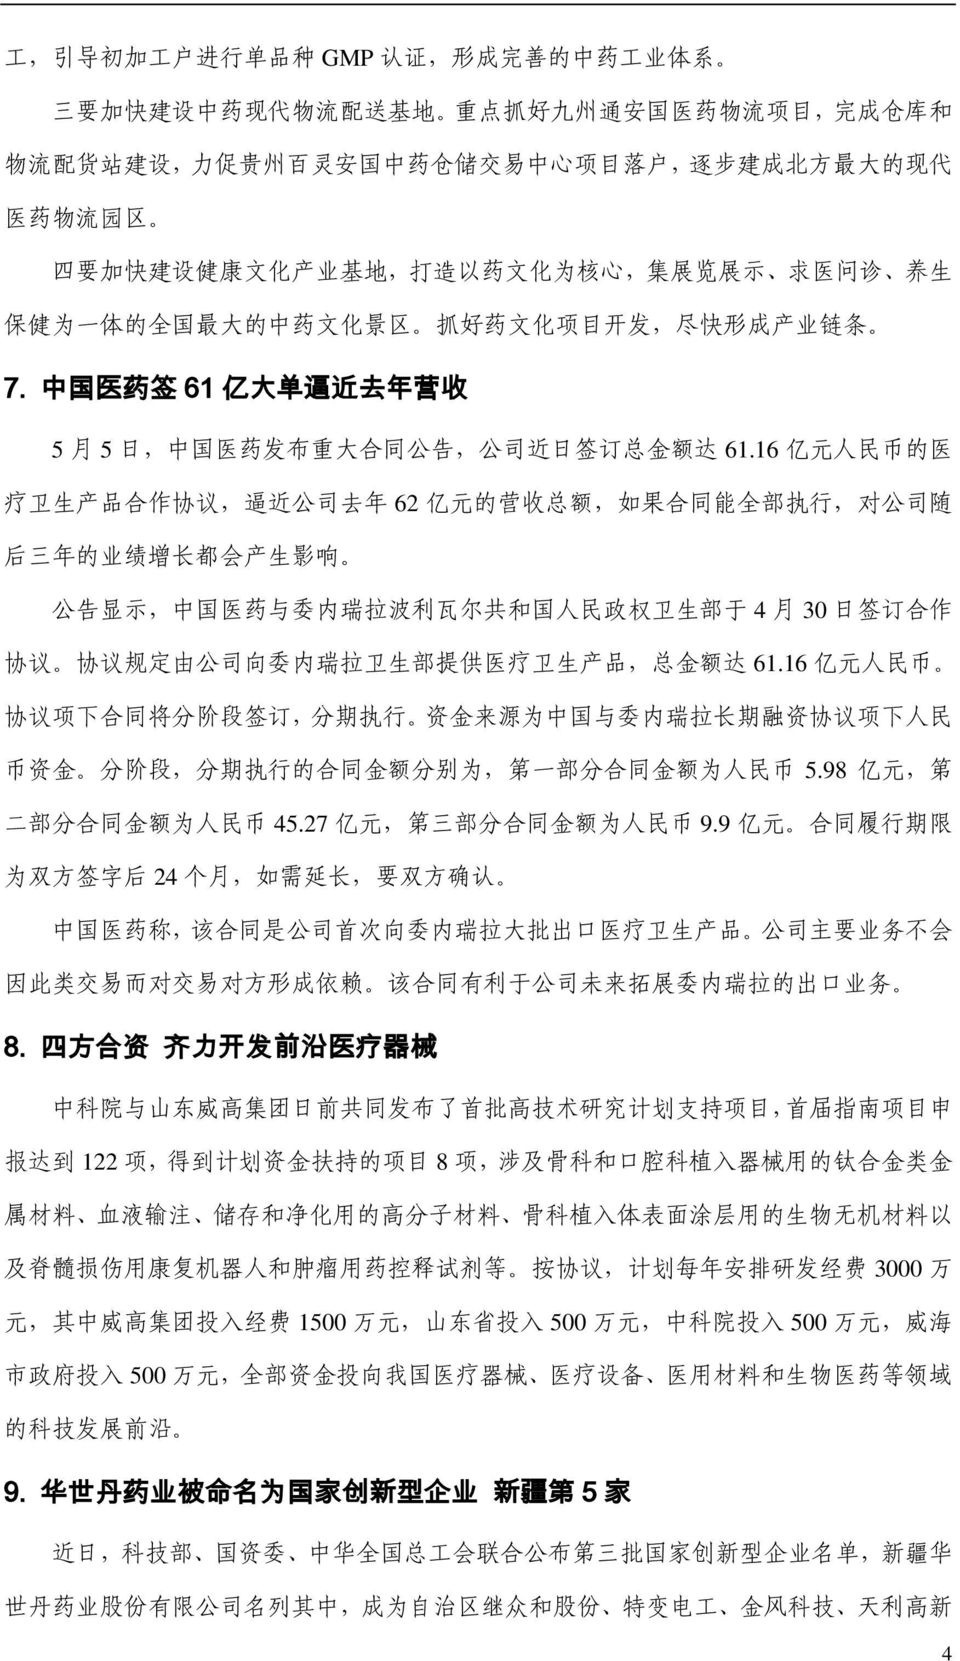 中 国 医 药 签 61 亿 大 单 逼 近 去 年 营 收 5 月 5 日, 中 国 医 药 发 布 重 大 合 同 公 告, 公 司 近 日 签 订 总 金 额 达 61.